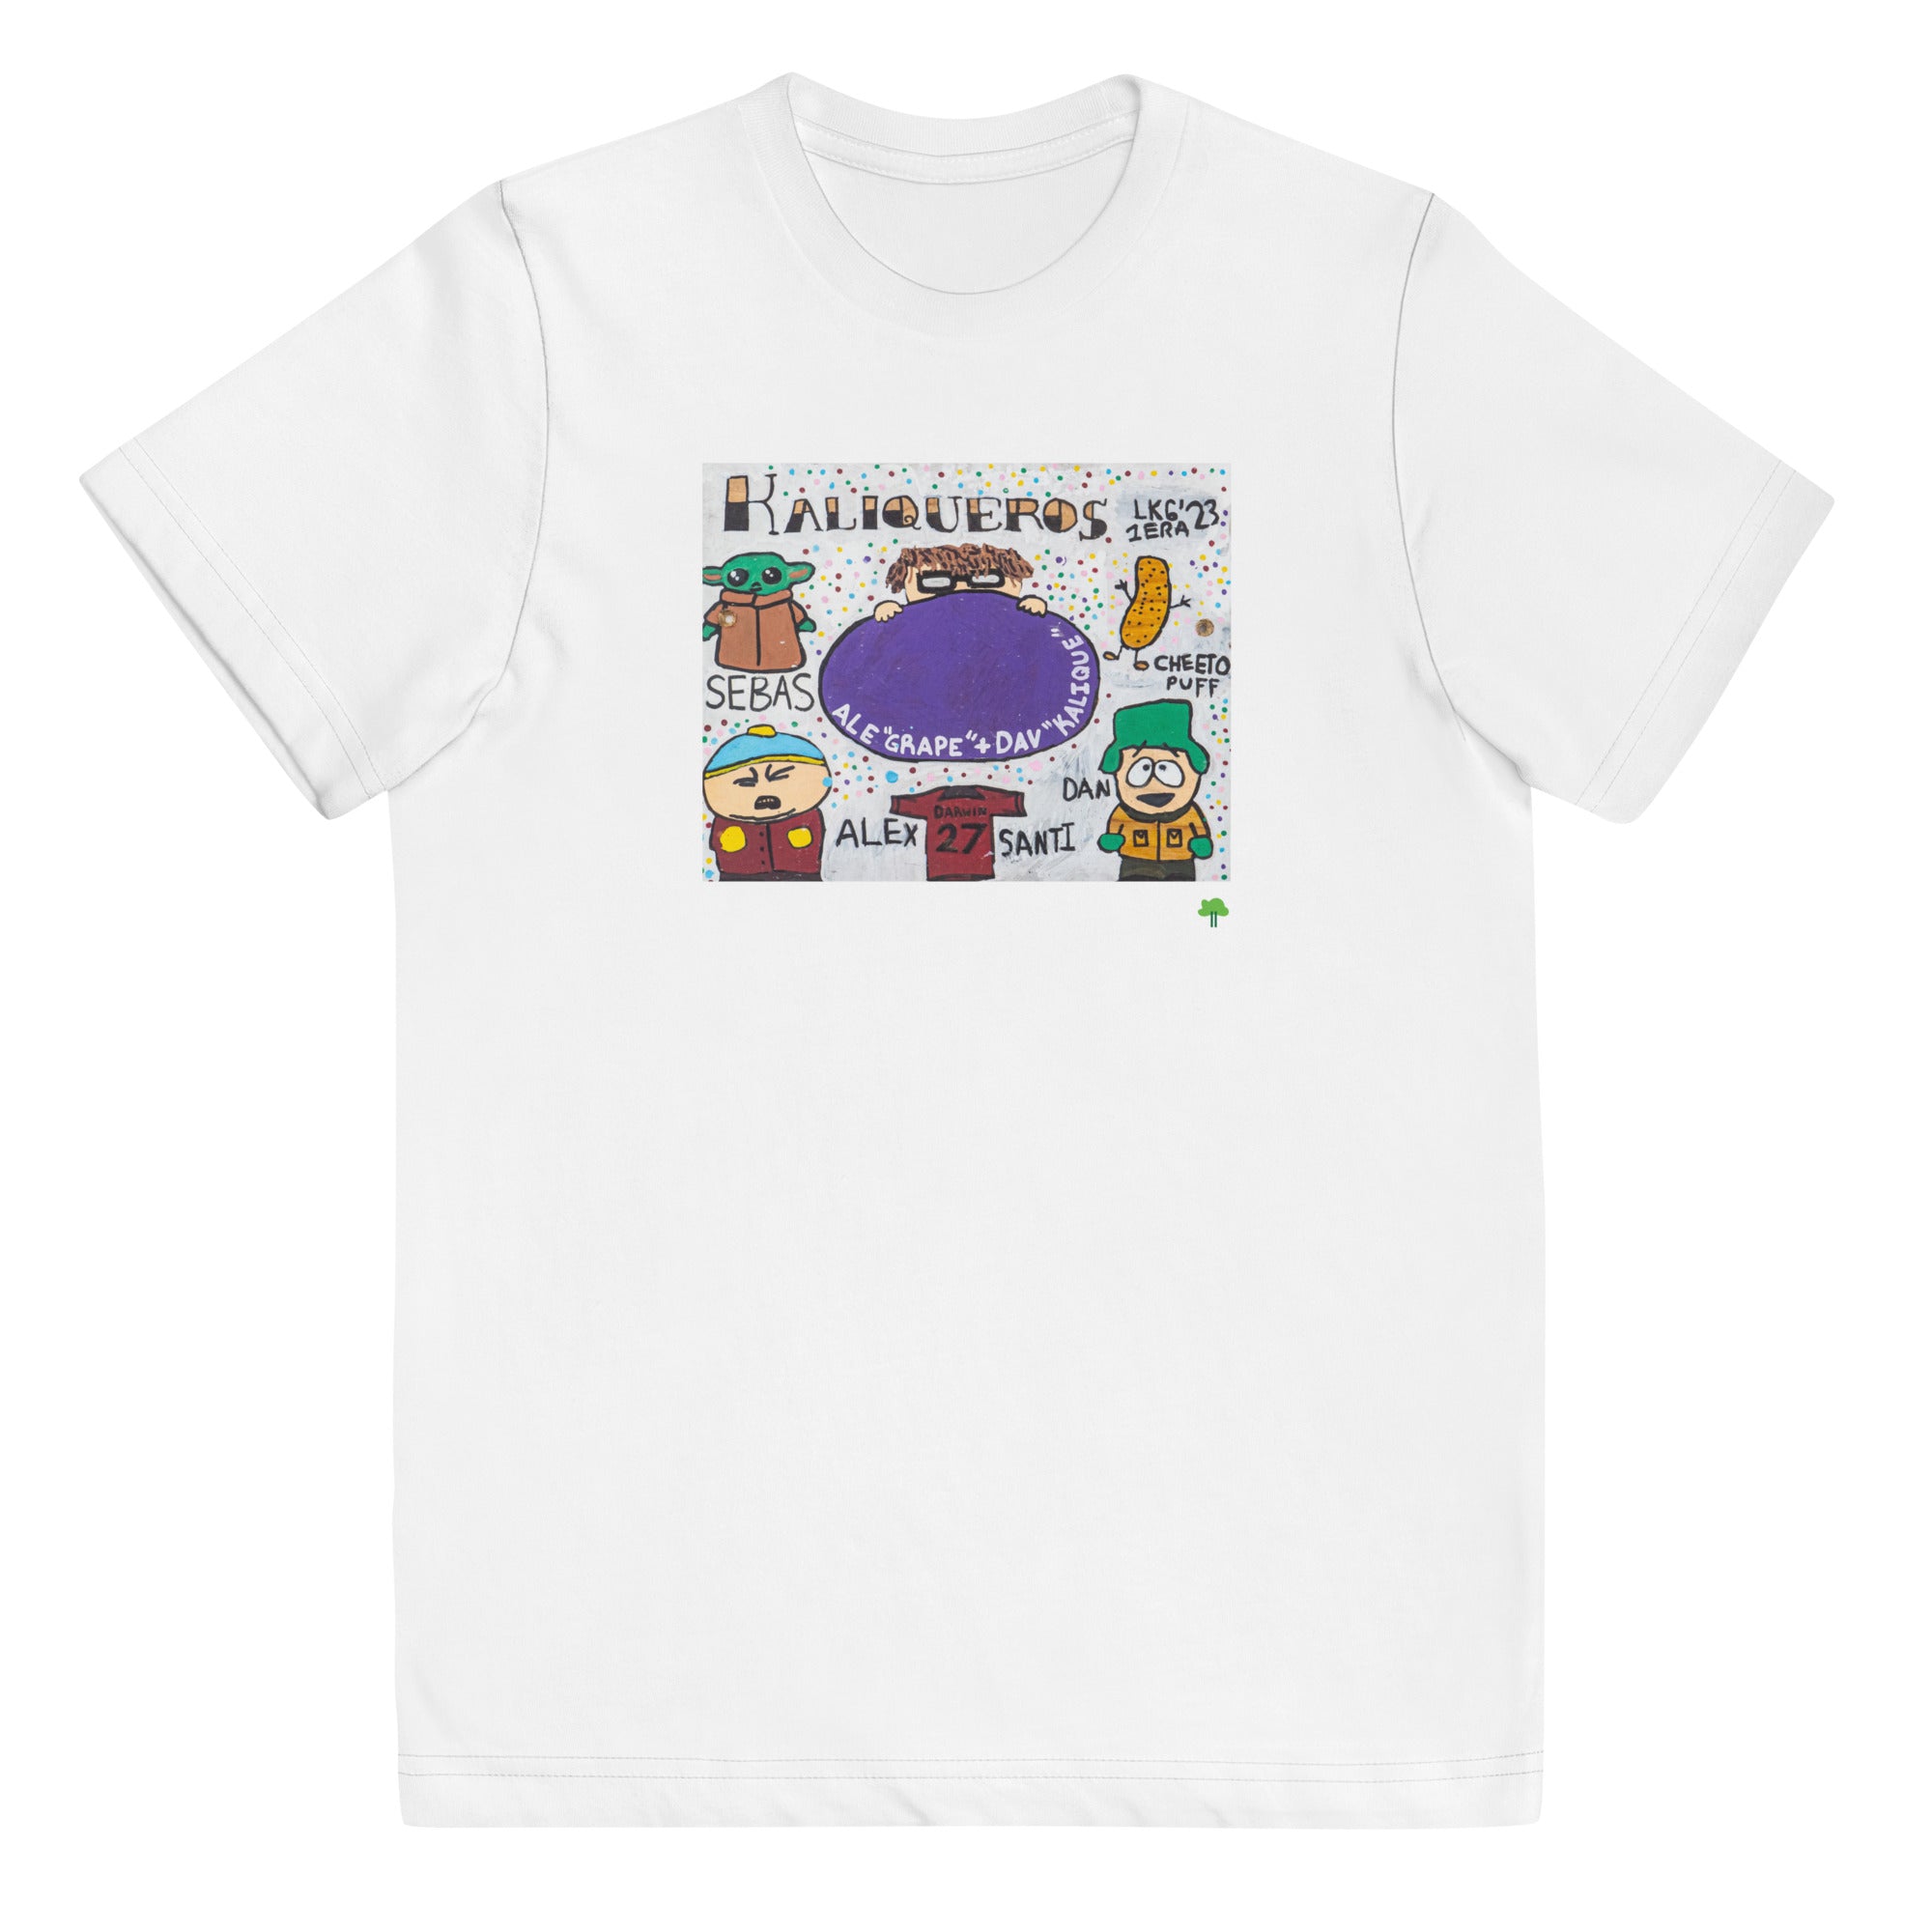 I Temp - Lago - K6 | Youth jersey t-shirt